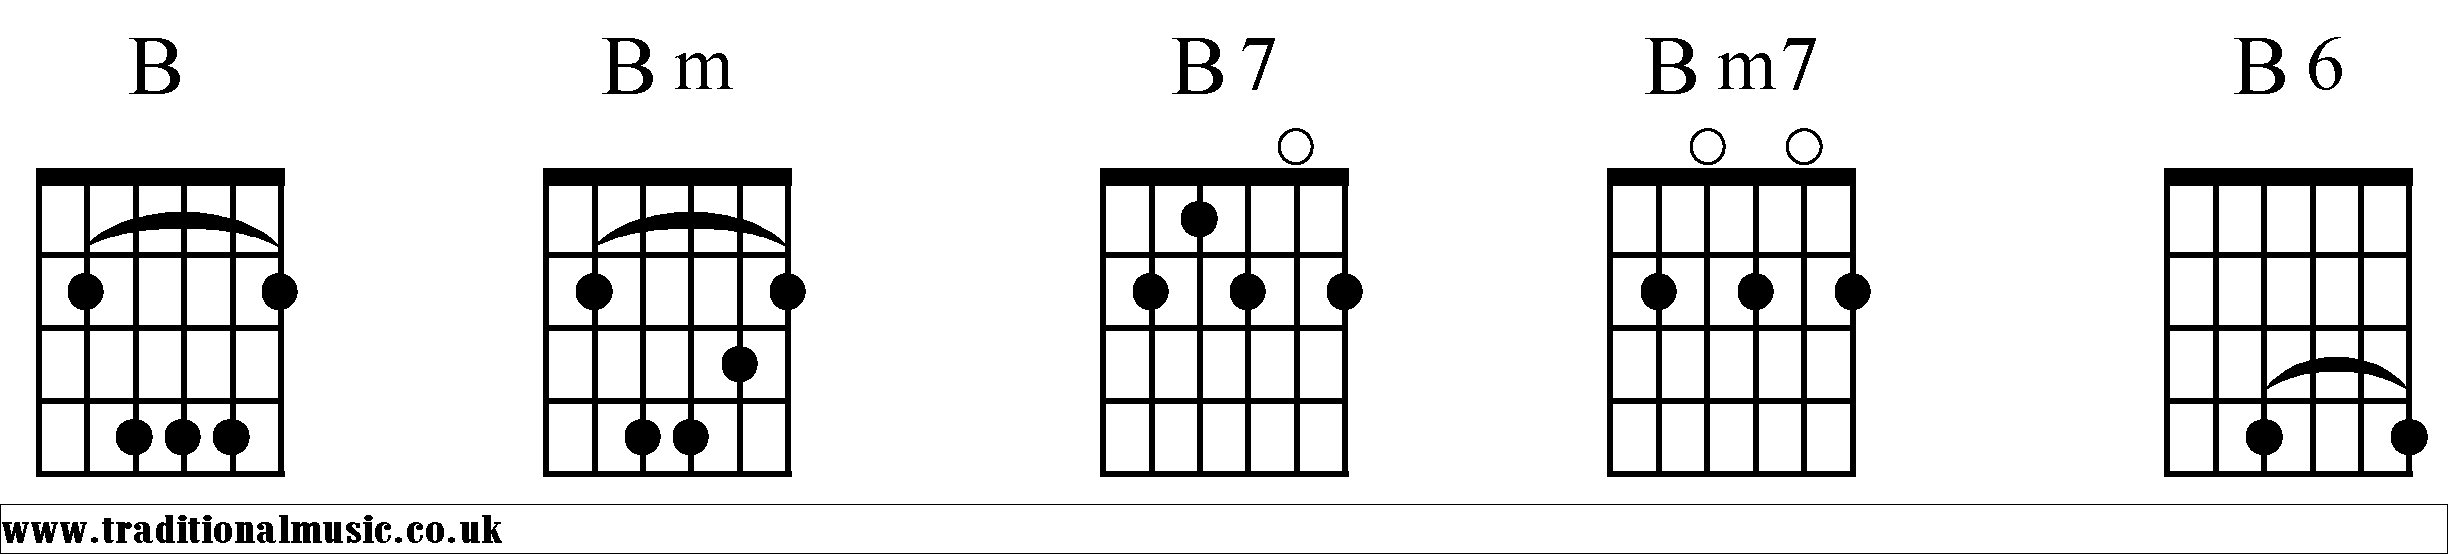 B Chords diagrams Guitar 1